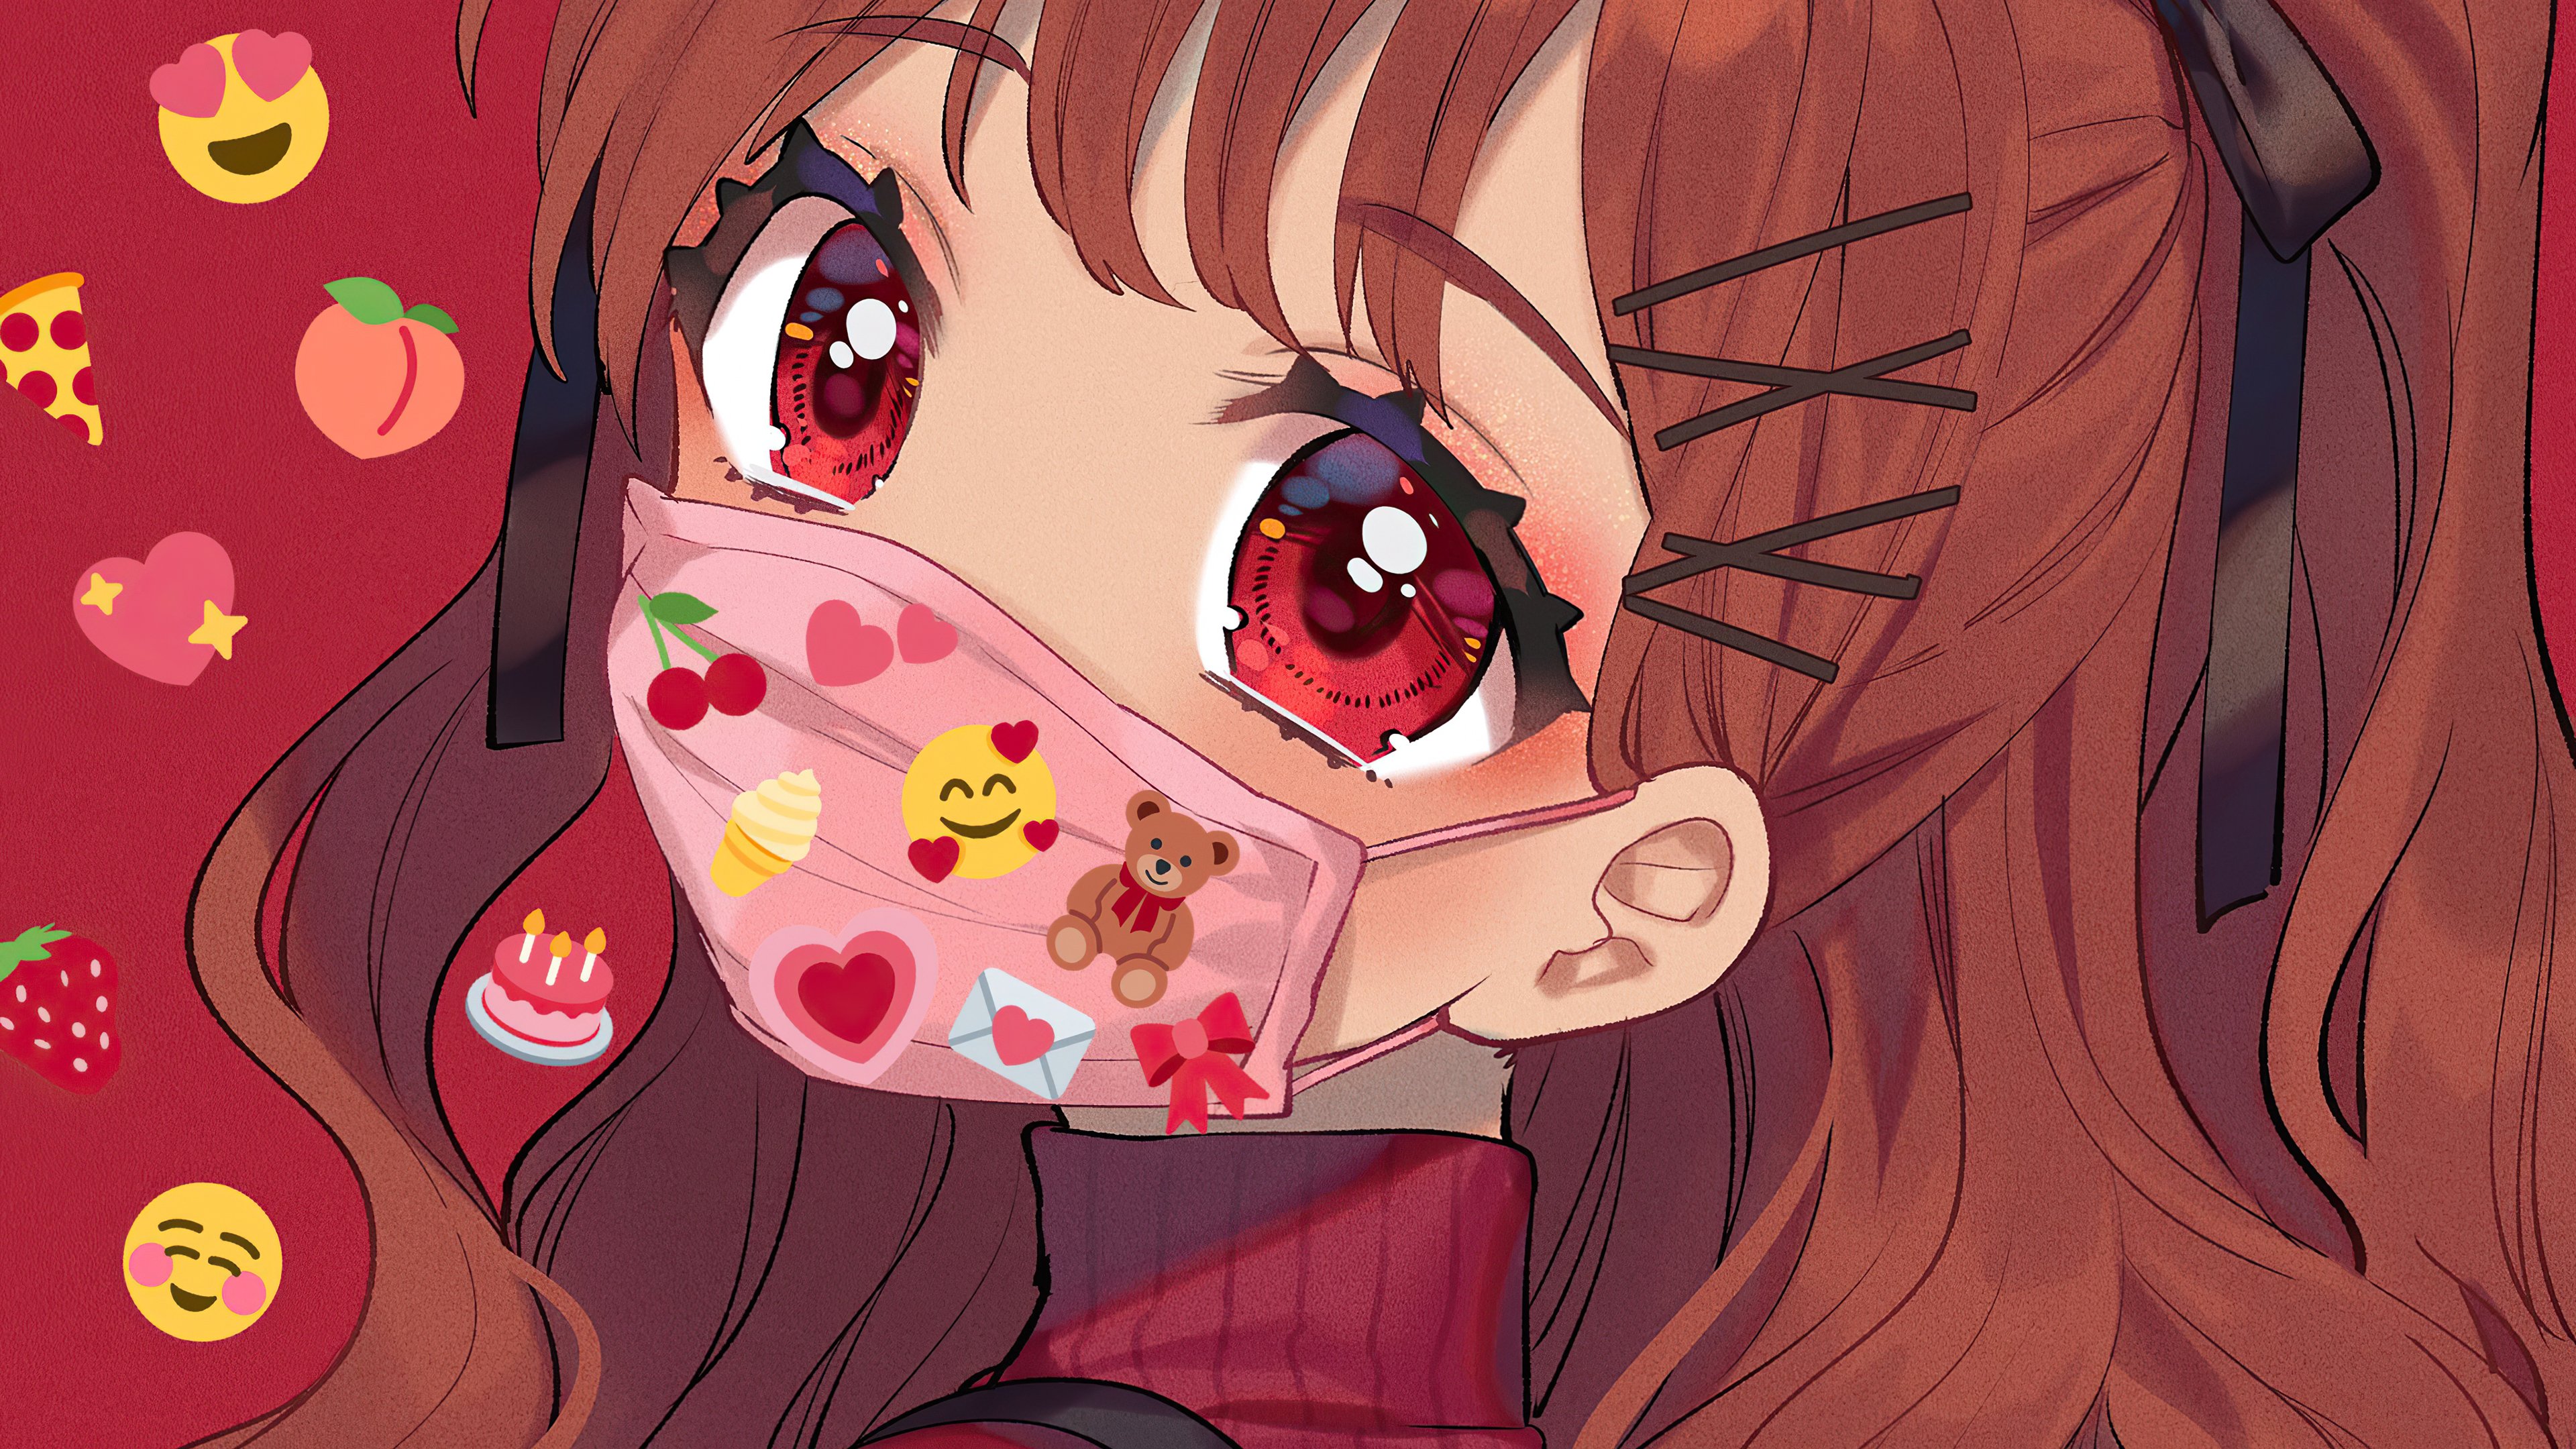 Fondos de pantalla Chica anime con ojos rojos y mascara